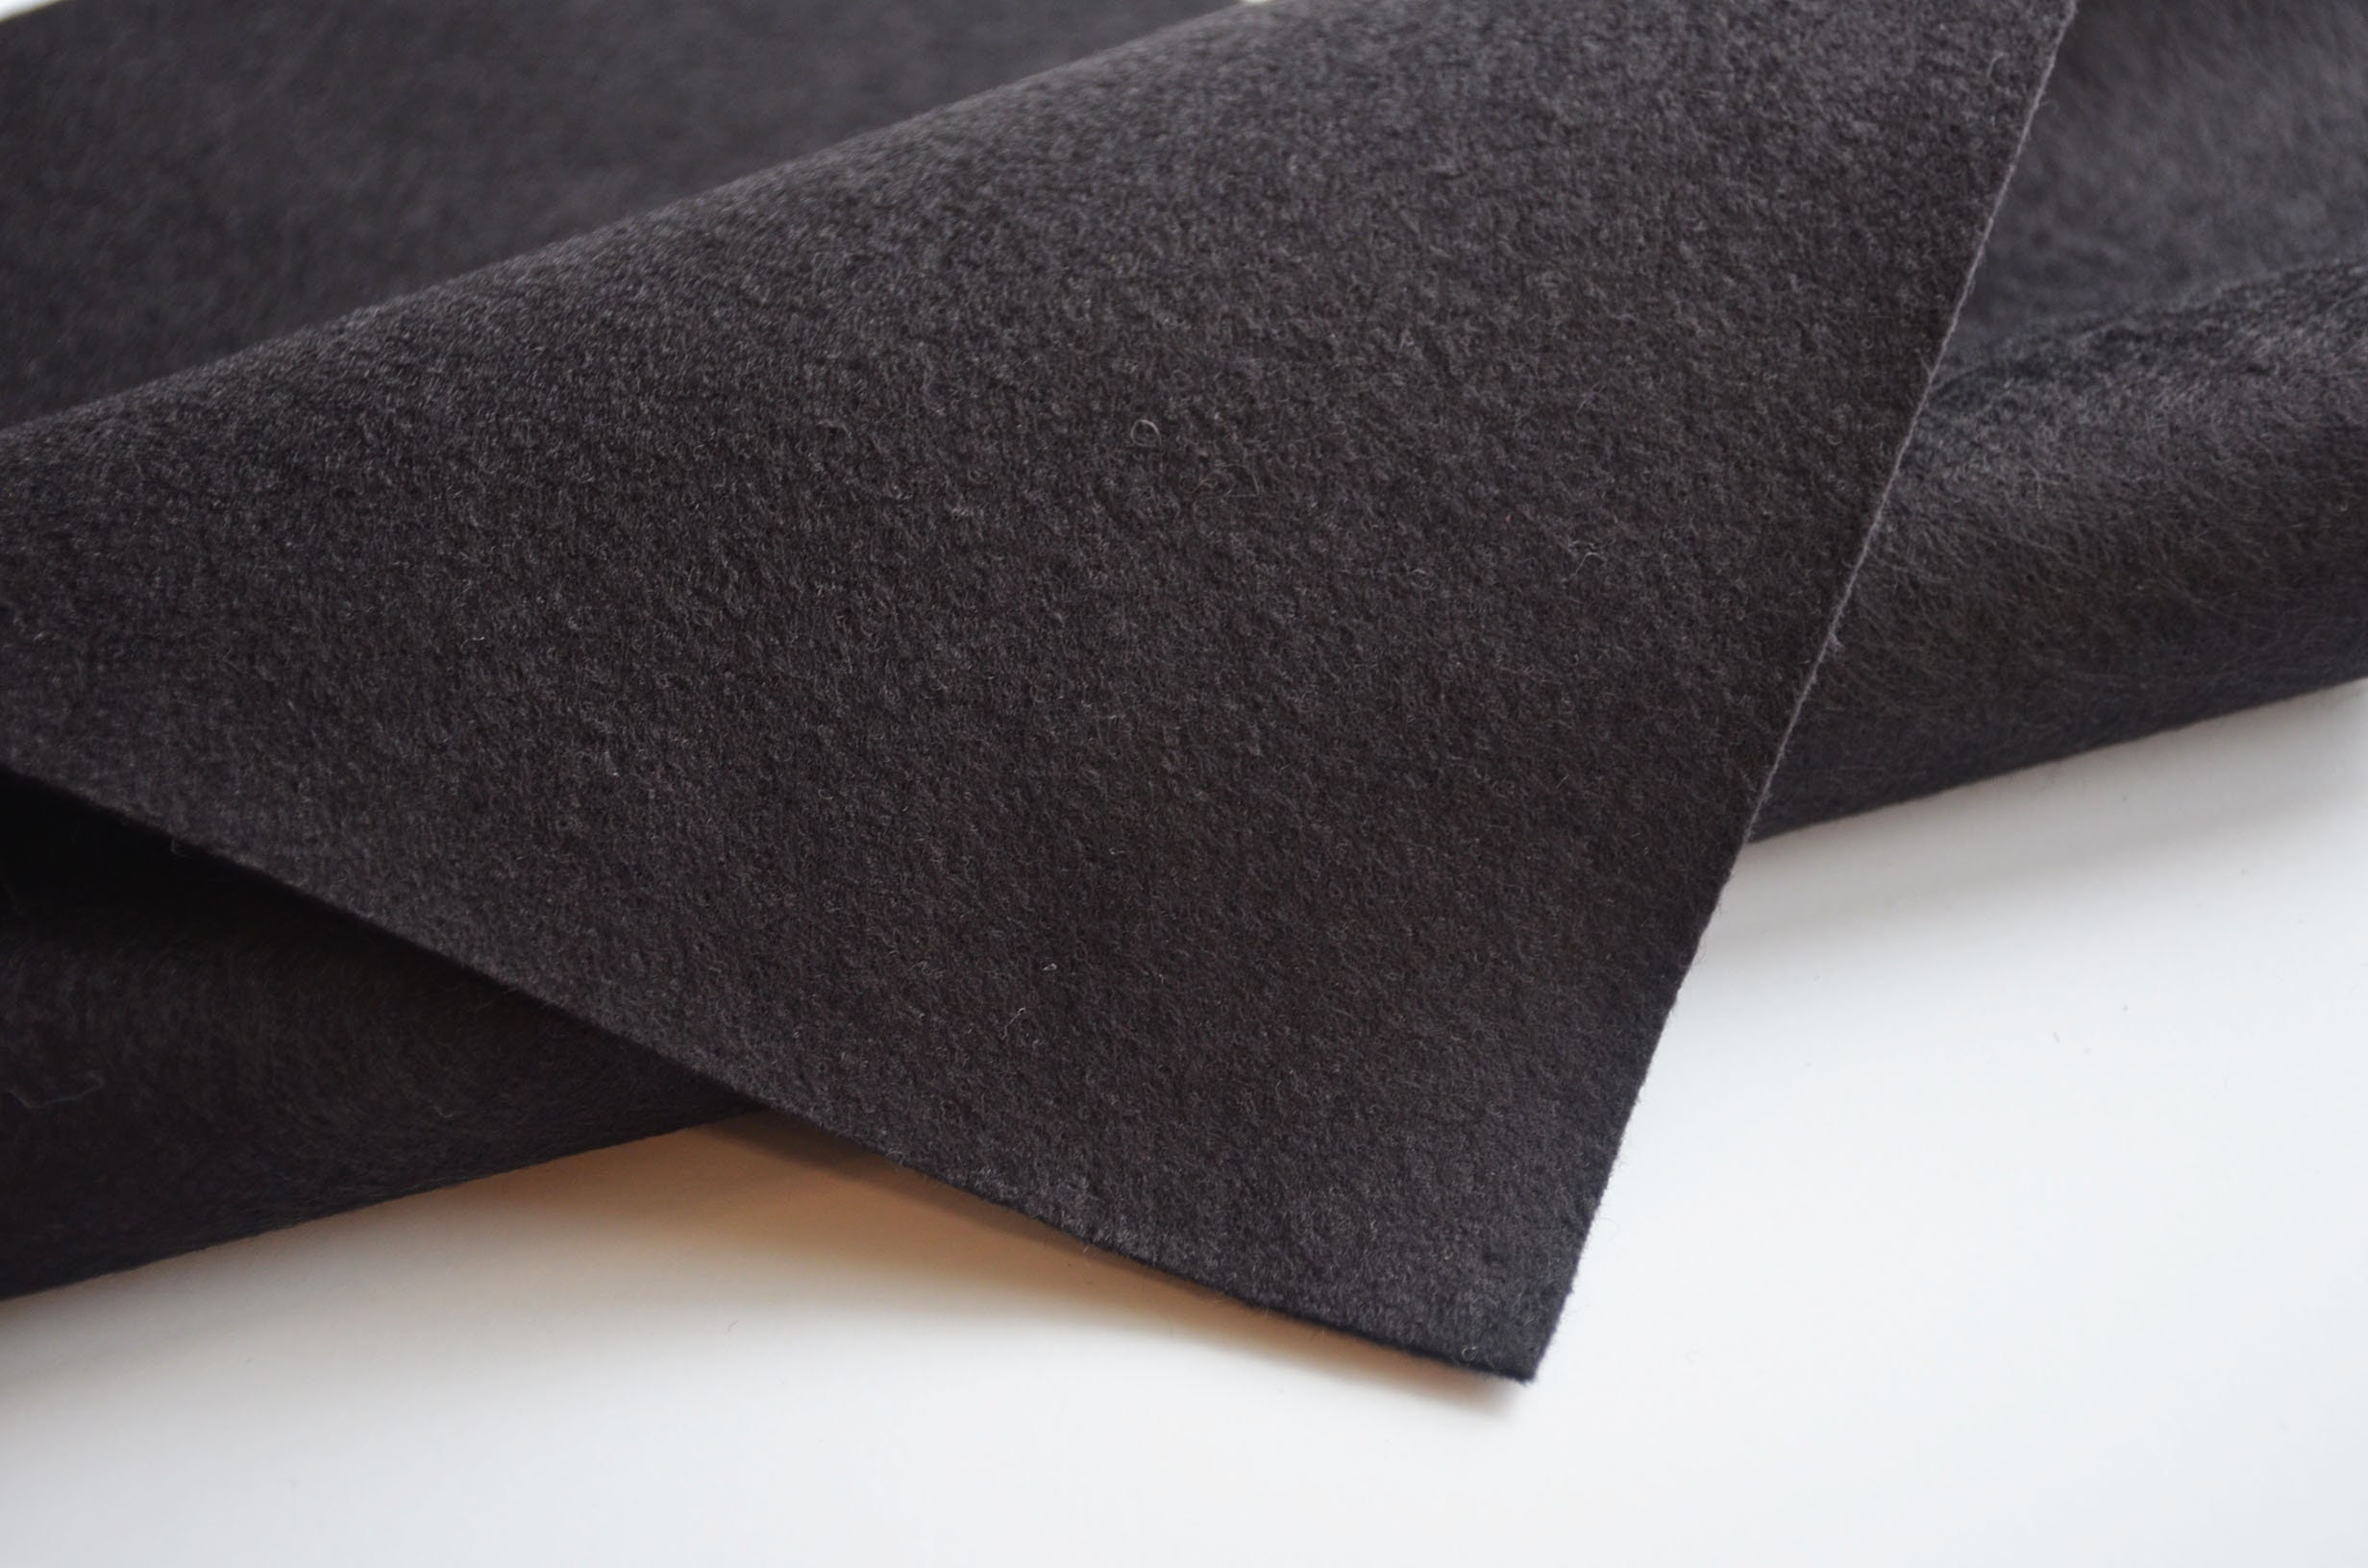 Pressed Wool Felt Sheet, 6 foot x 1 foot x 1/2 Thick, Gray